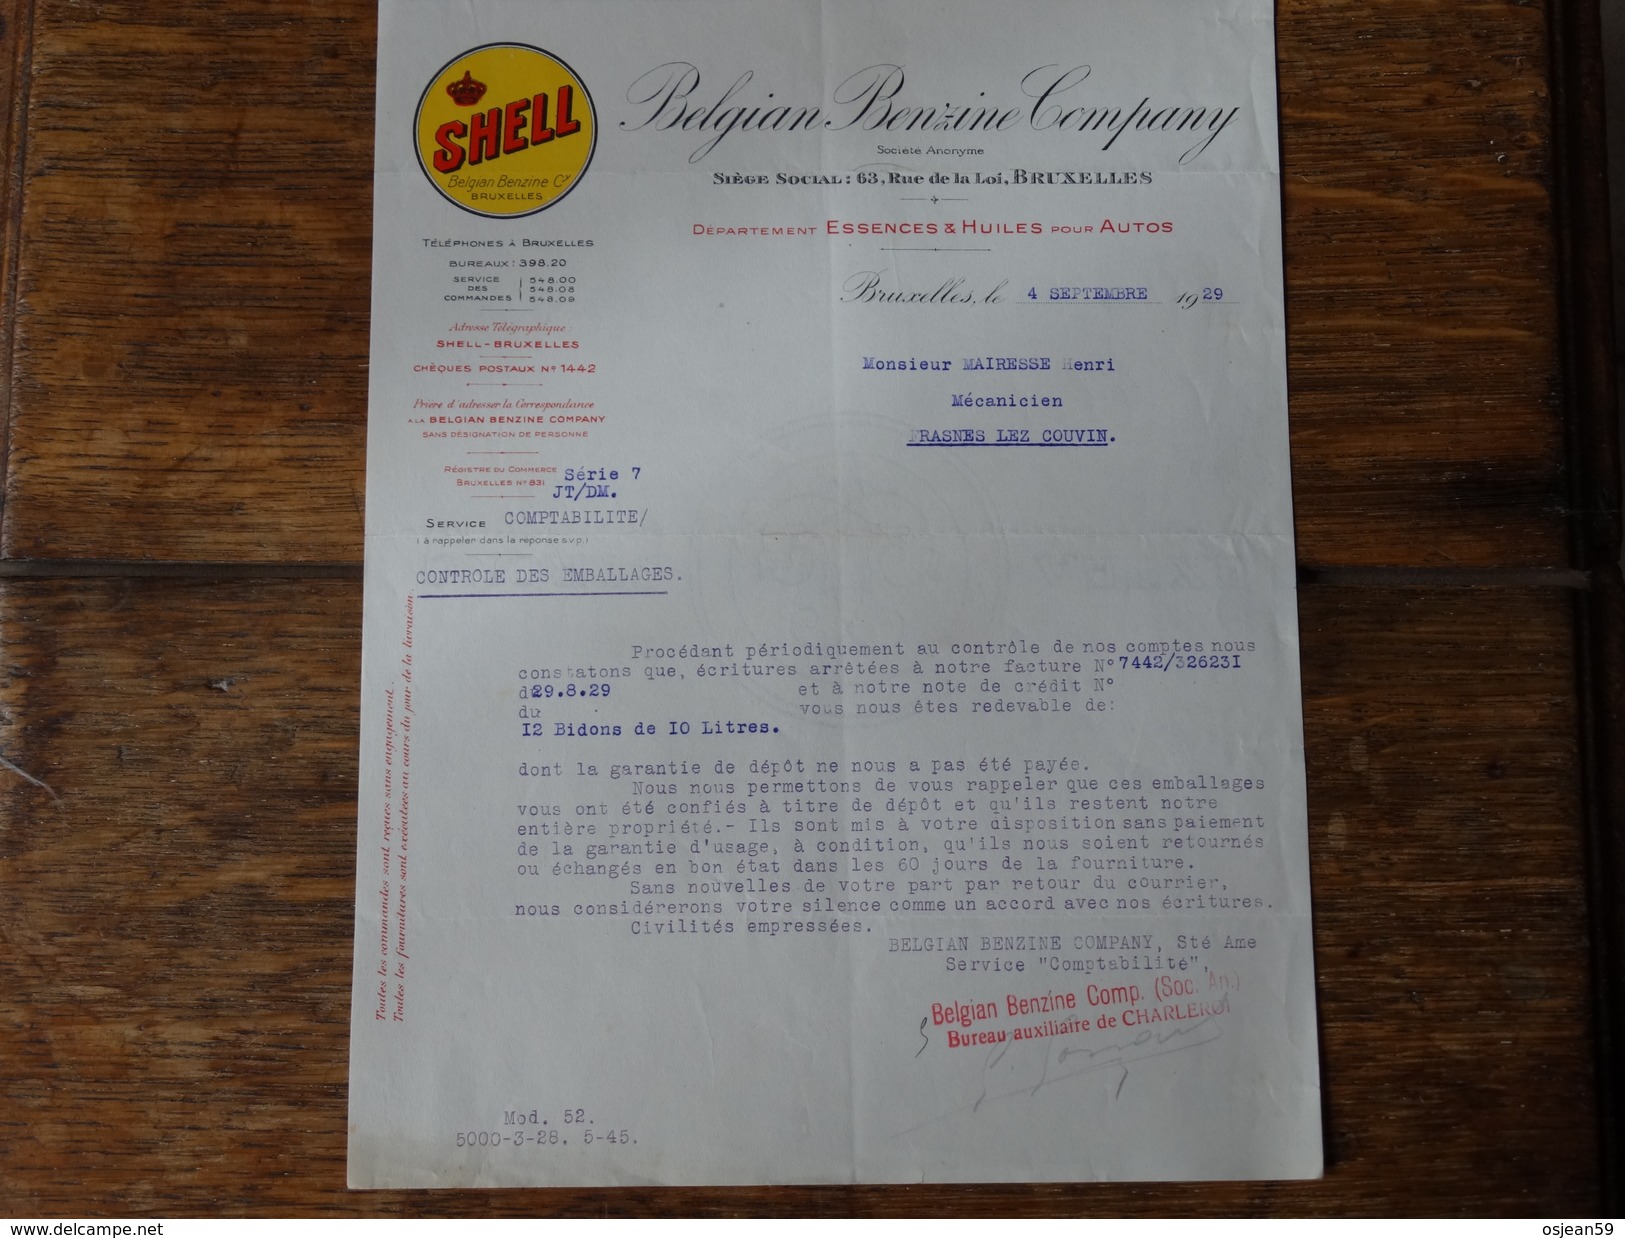 SHELL-Belgian Benzine Company - Lettre Sur Le Contrôle Des Emballages Du 04 Septembre 1929. - Automobilismo